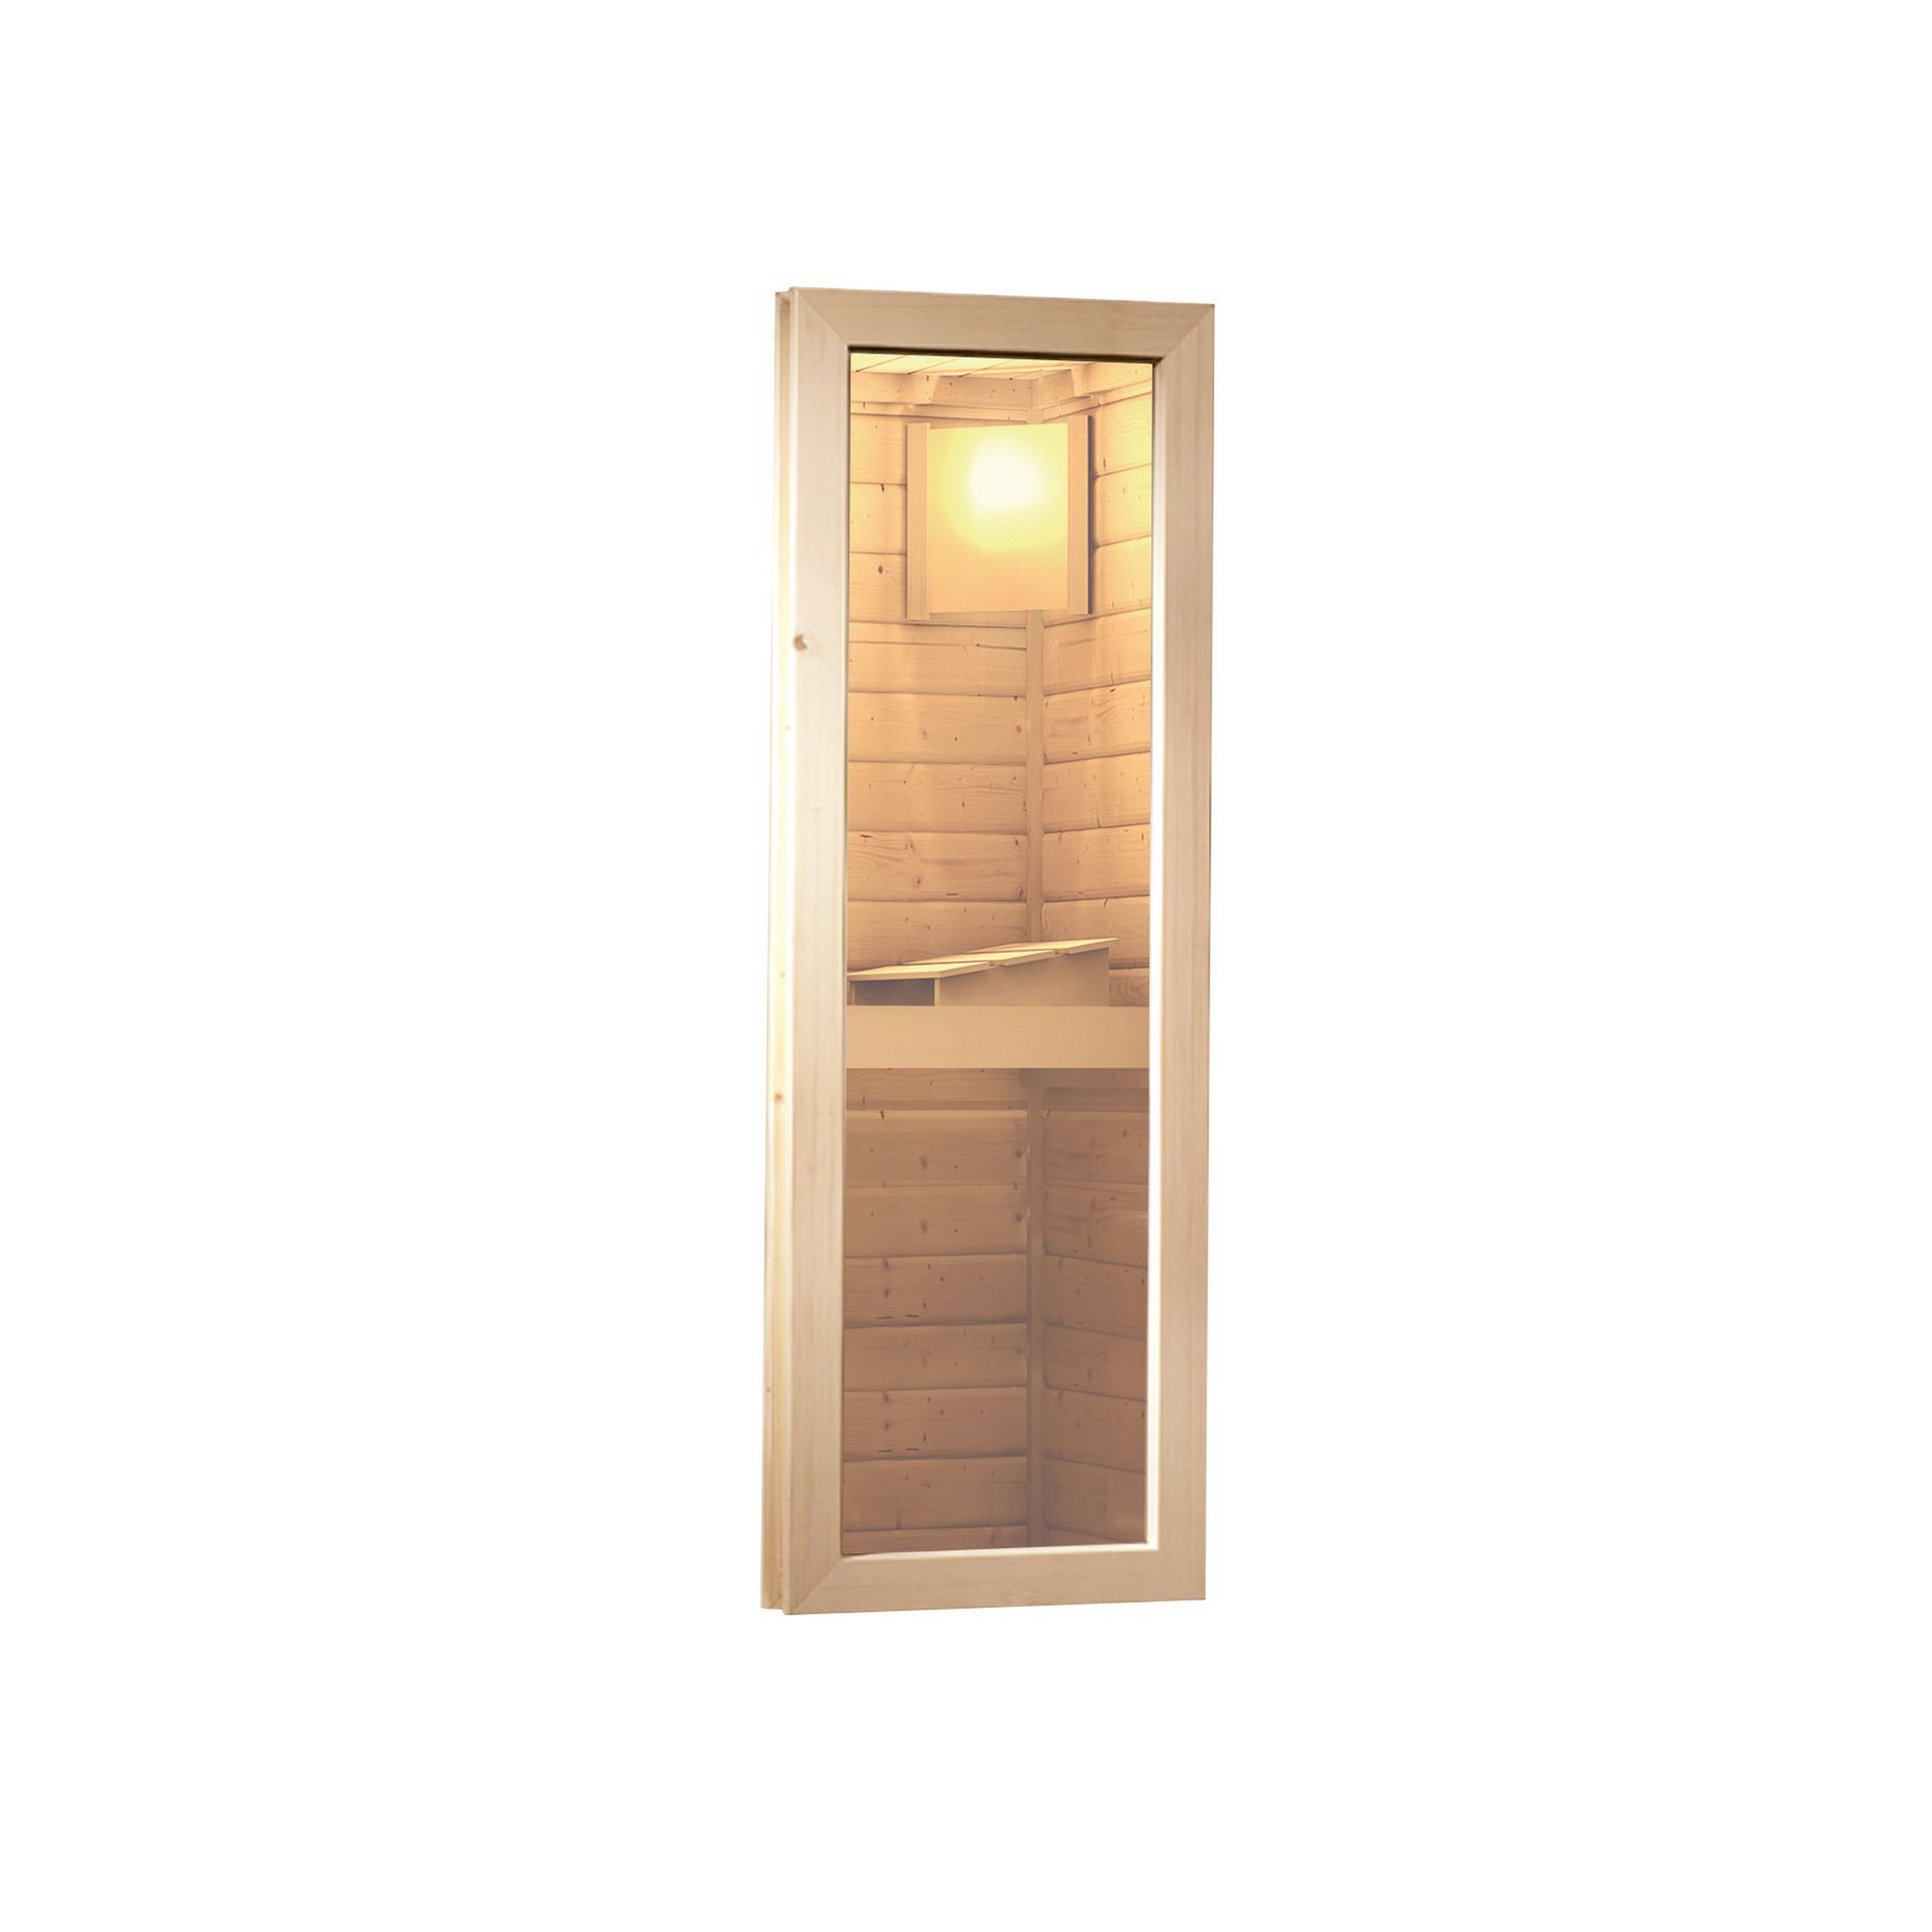 Saunahaus 'Skrollan 1' naturbelassen mit klassischer Tür und Holzofen 336 x 196 x 228 cm + product picture